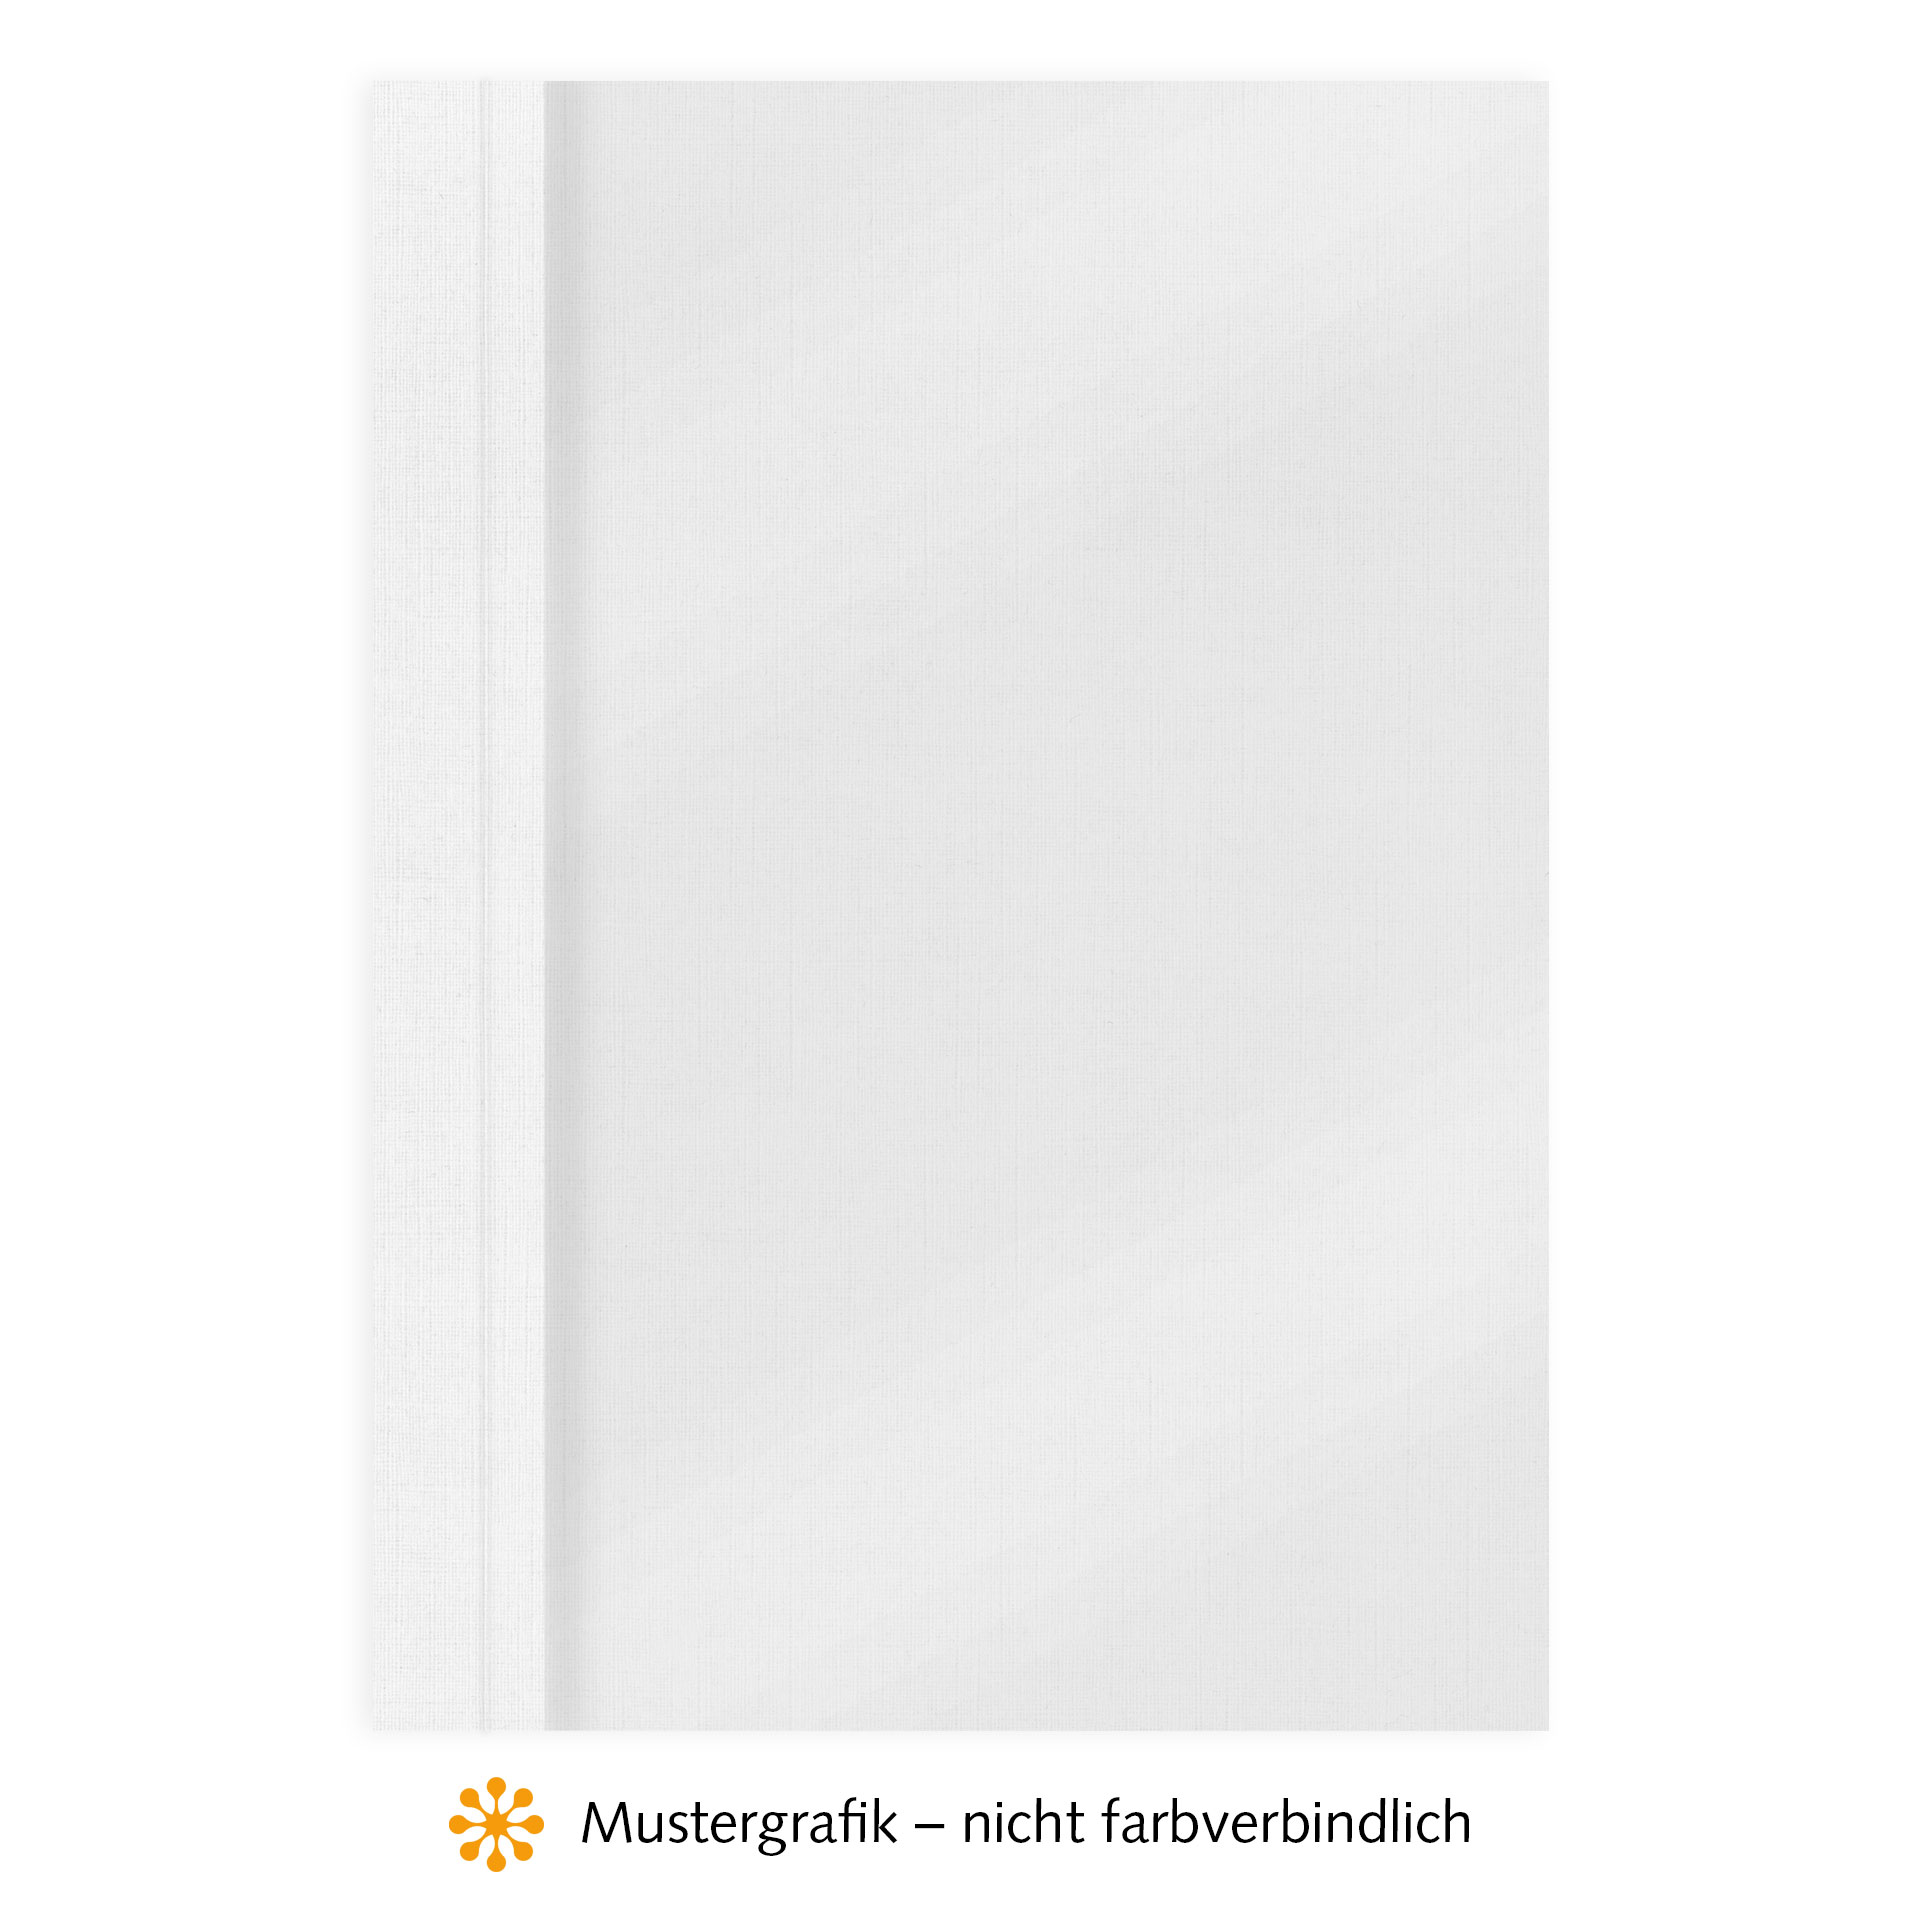 Ösenmappen DUO Cover, Vorderseite Folie MATT transparent, Rückseite Karton Leinen, Weiß, 5 mm, 41 bis 50 Blatt